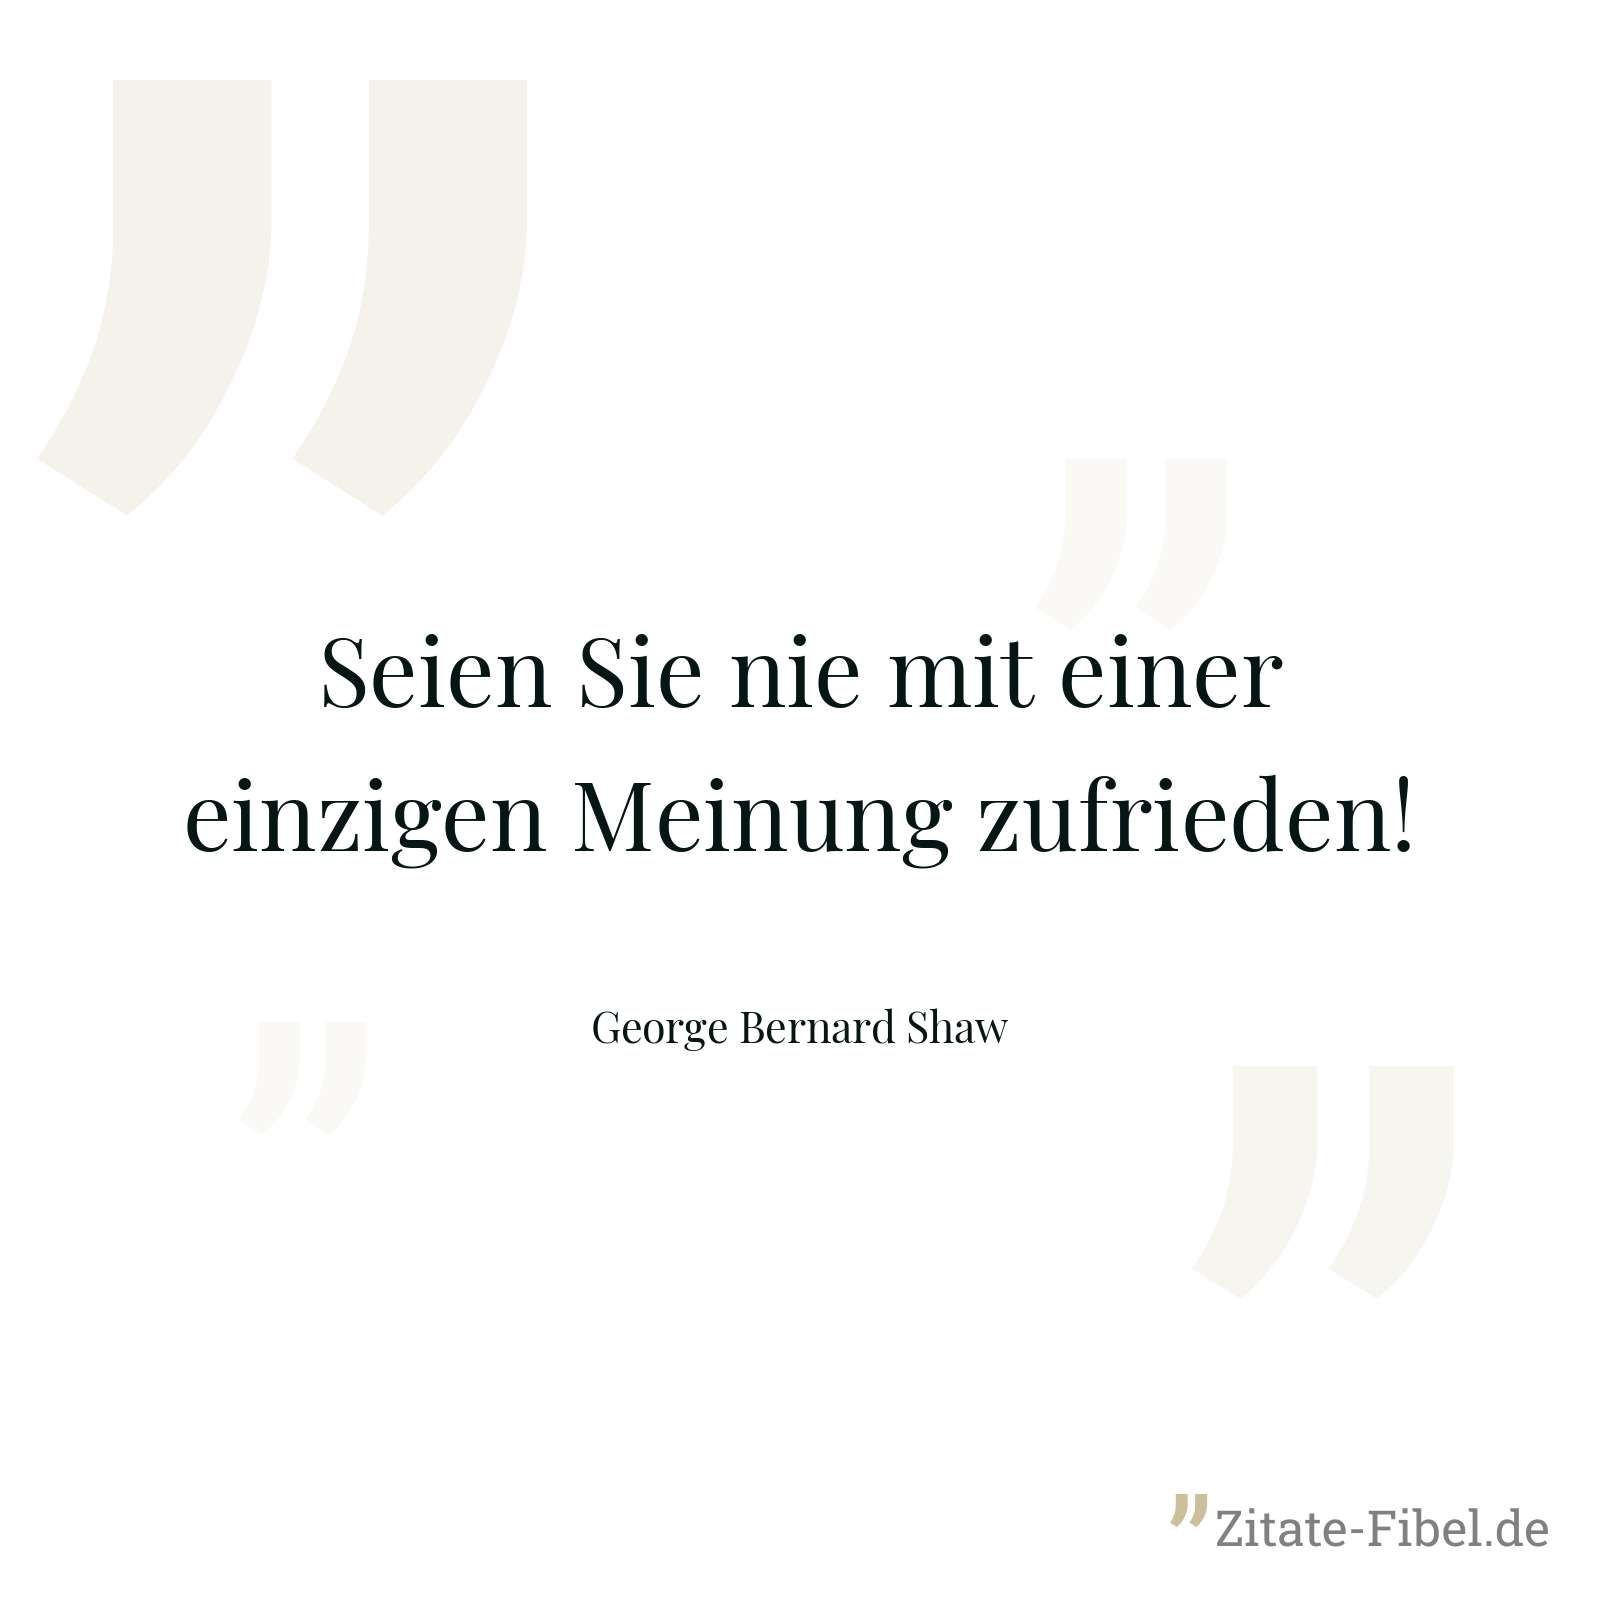 Seien Sie nie mit einer einzigen Meinung zufrieden! - George Bernard Shaw